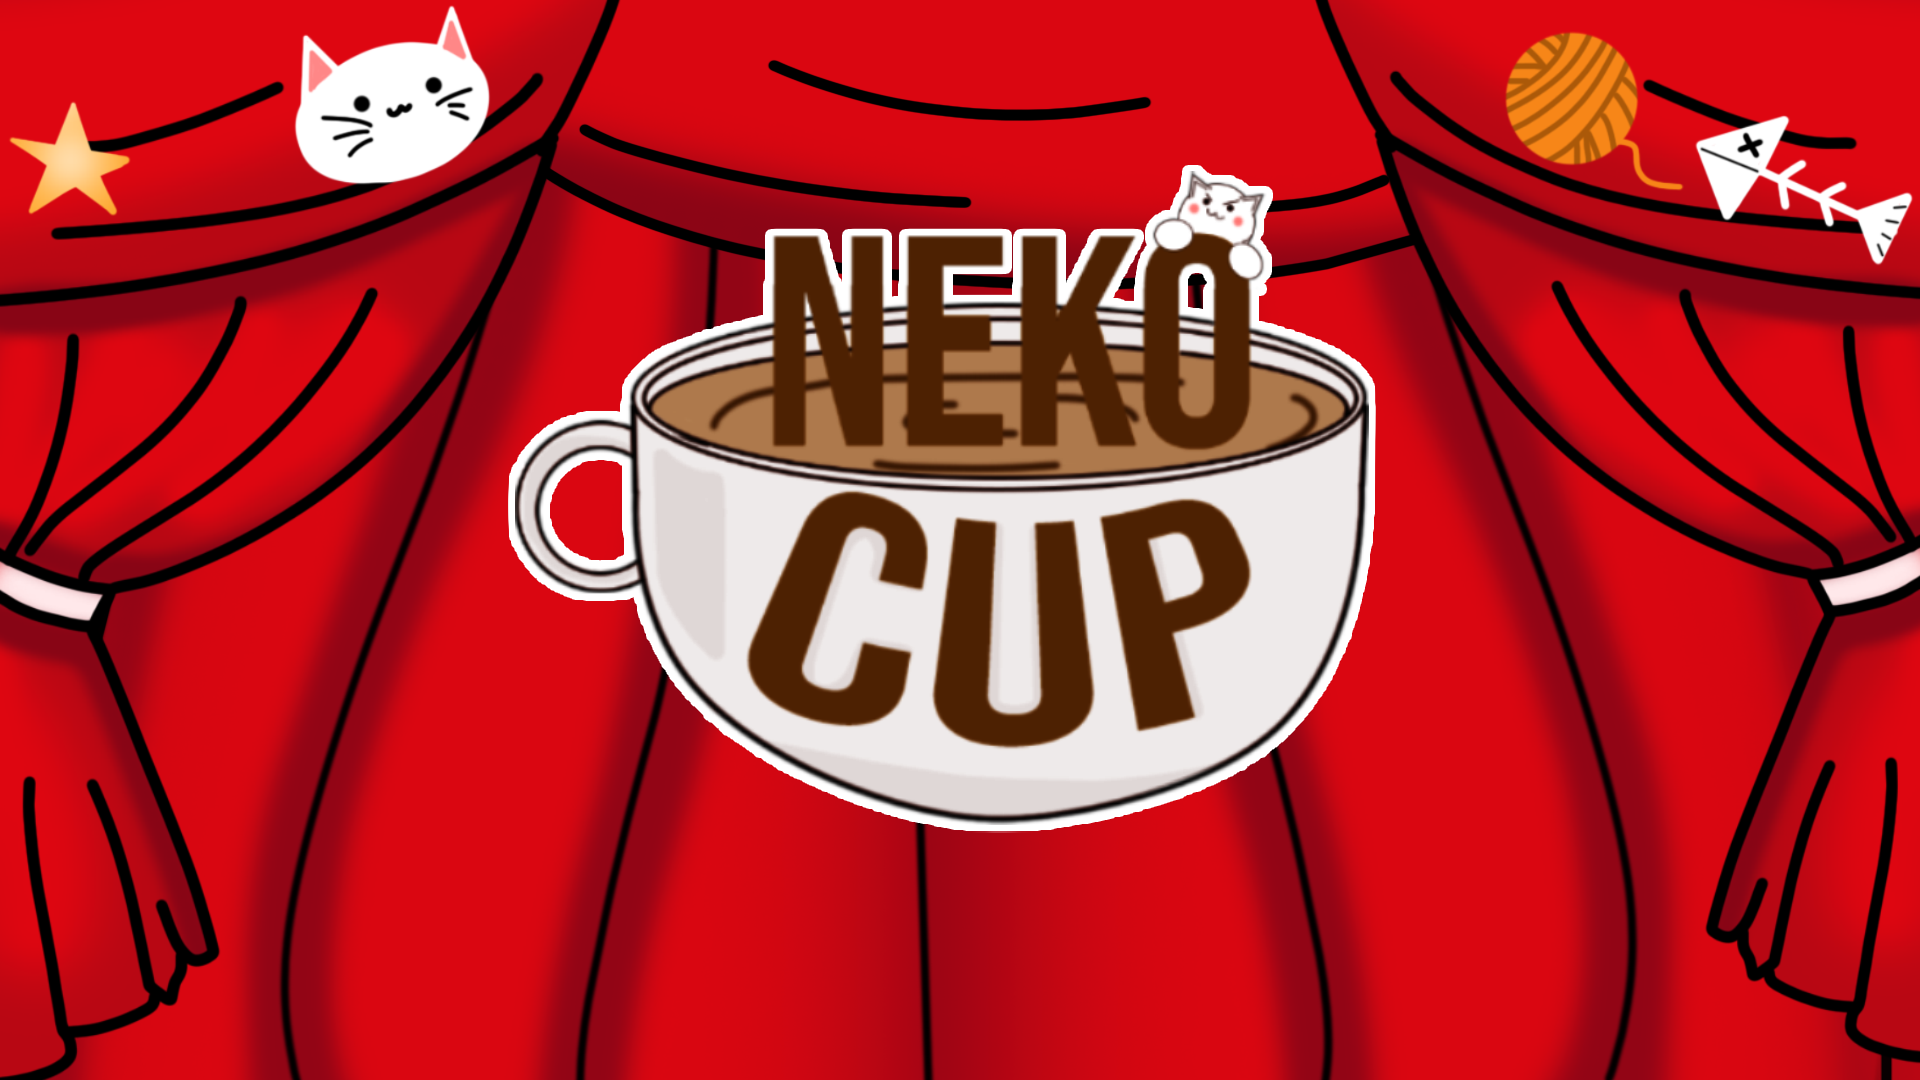 Neko Cup